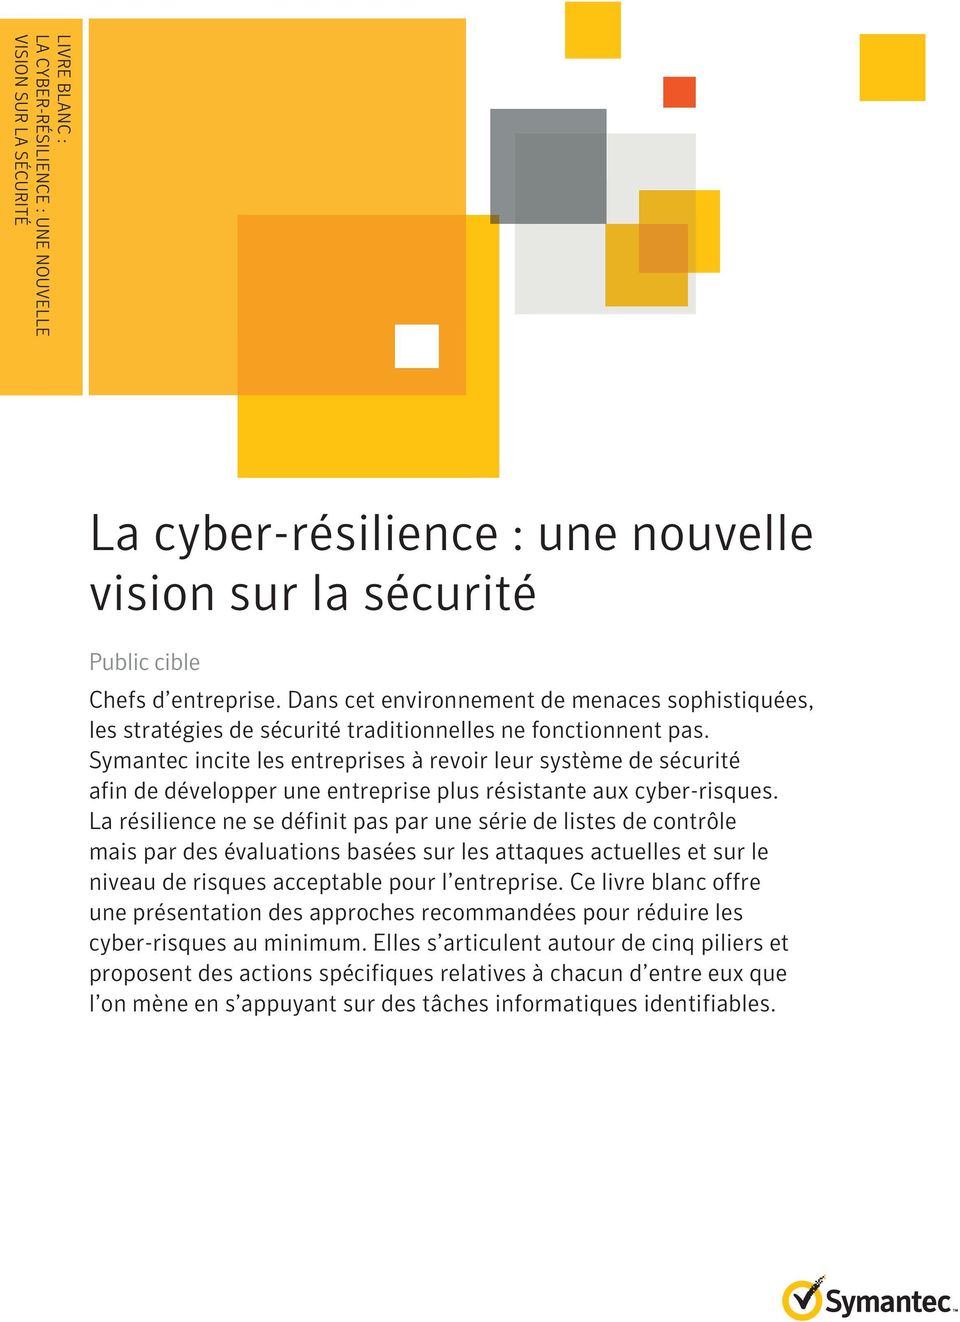 Symantec incite les entreprises à revoir leur système de sécurité afin de développer une entreprise plus résistante aux cyber-risques.